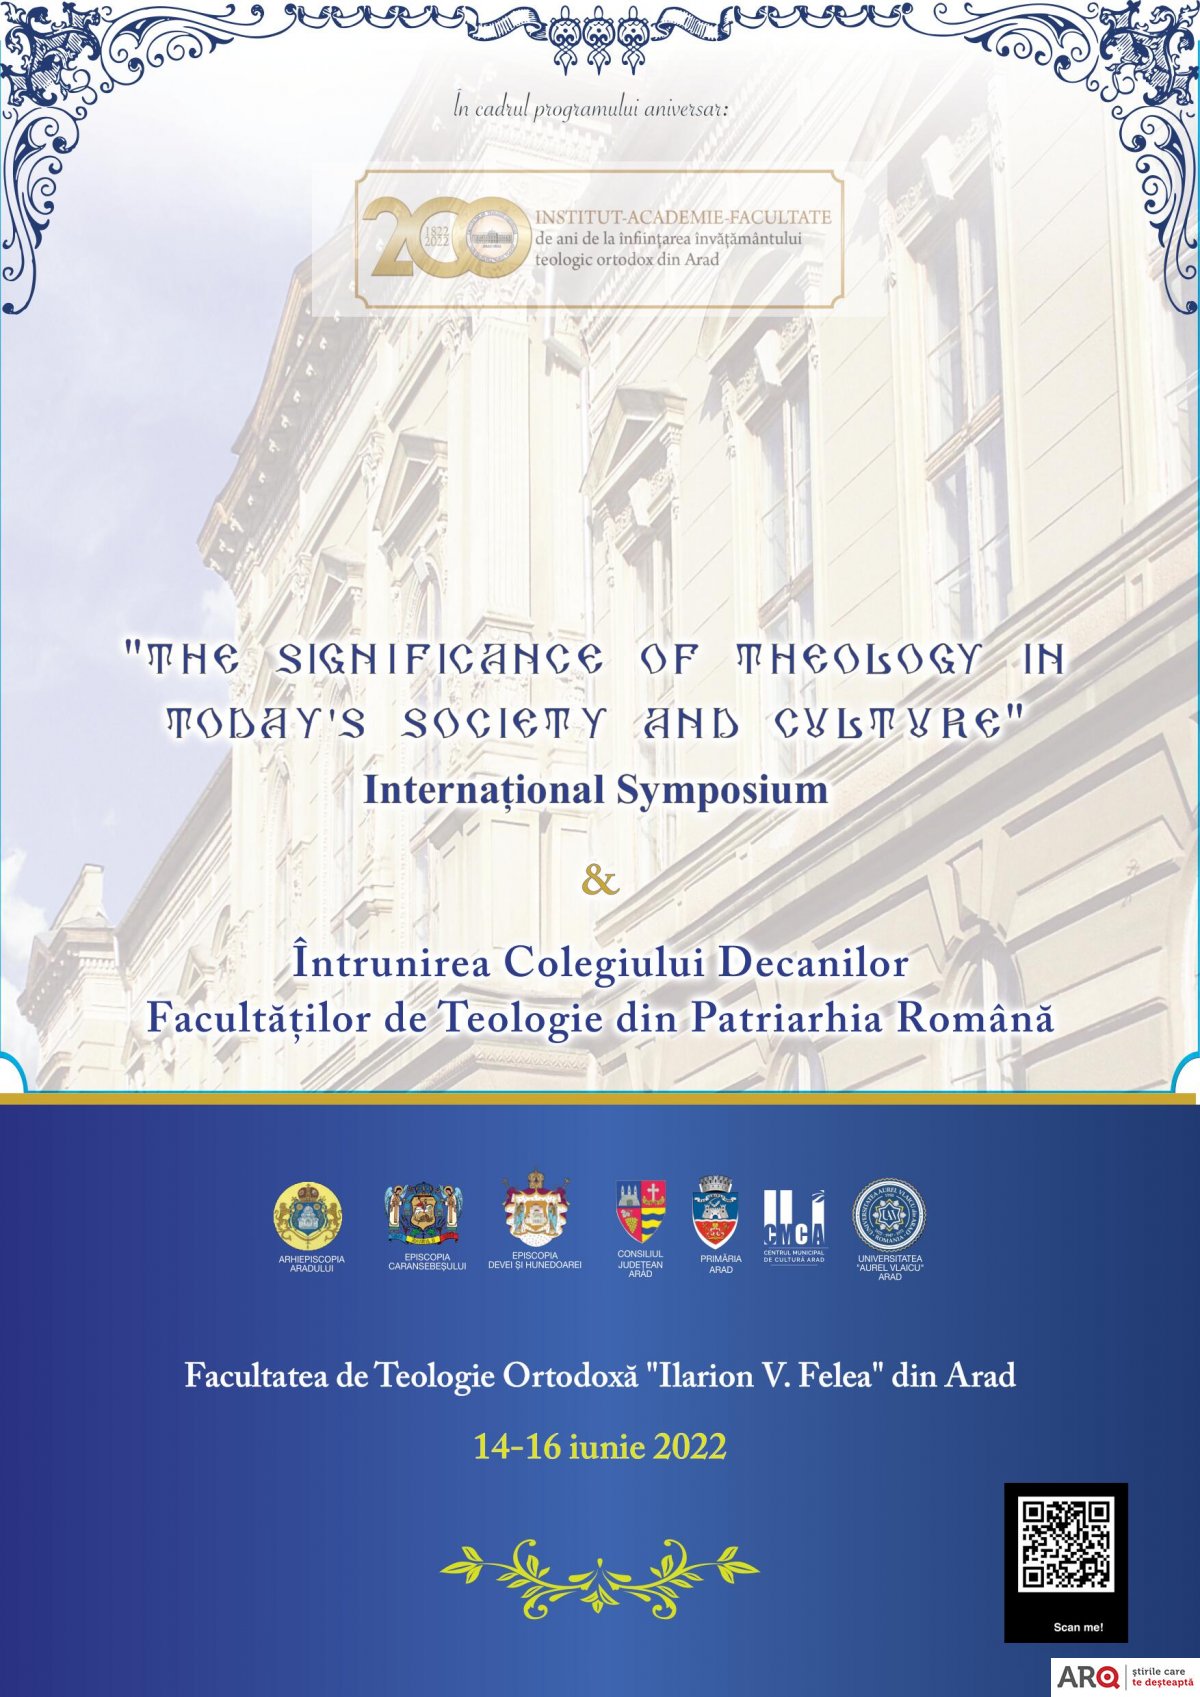 Simpozion internațional  și Colegiul Decanilor Facultăților din Patriarhia Română  la Arad   